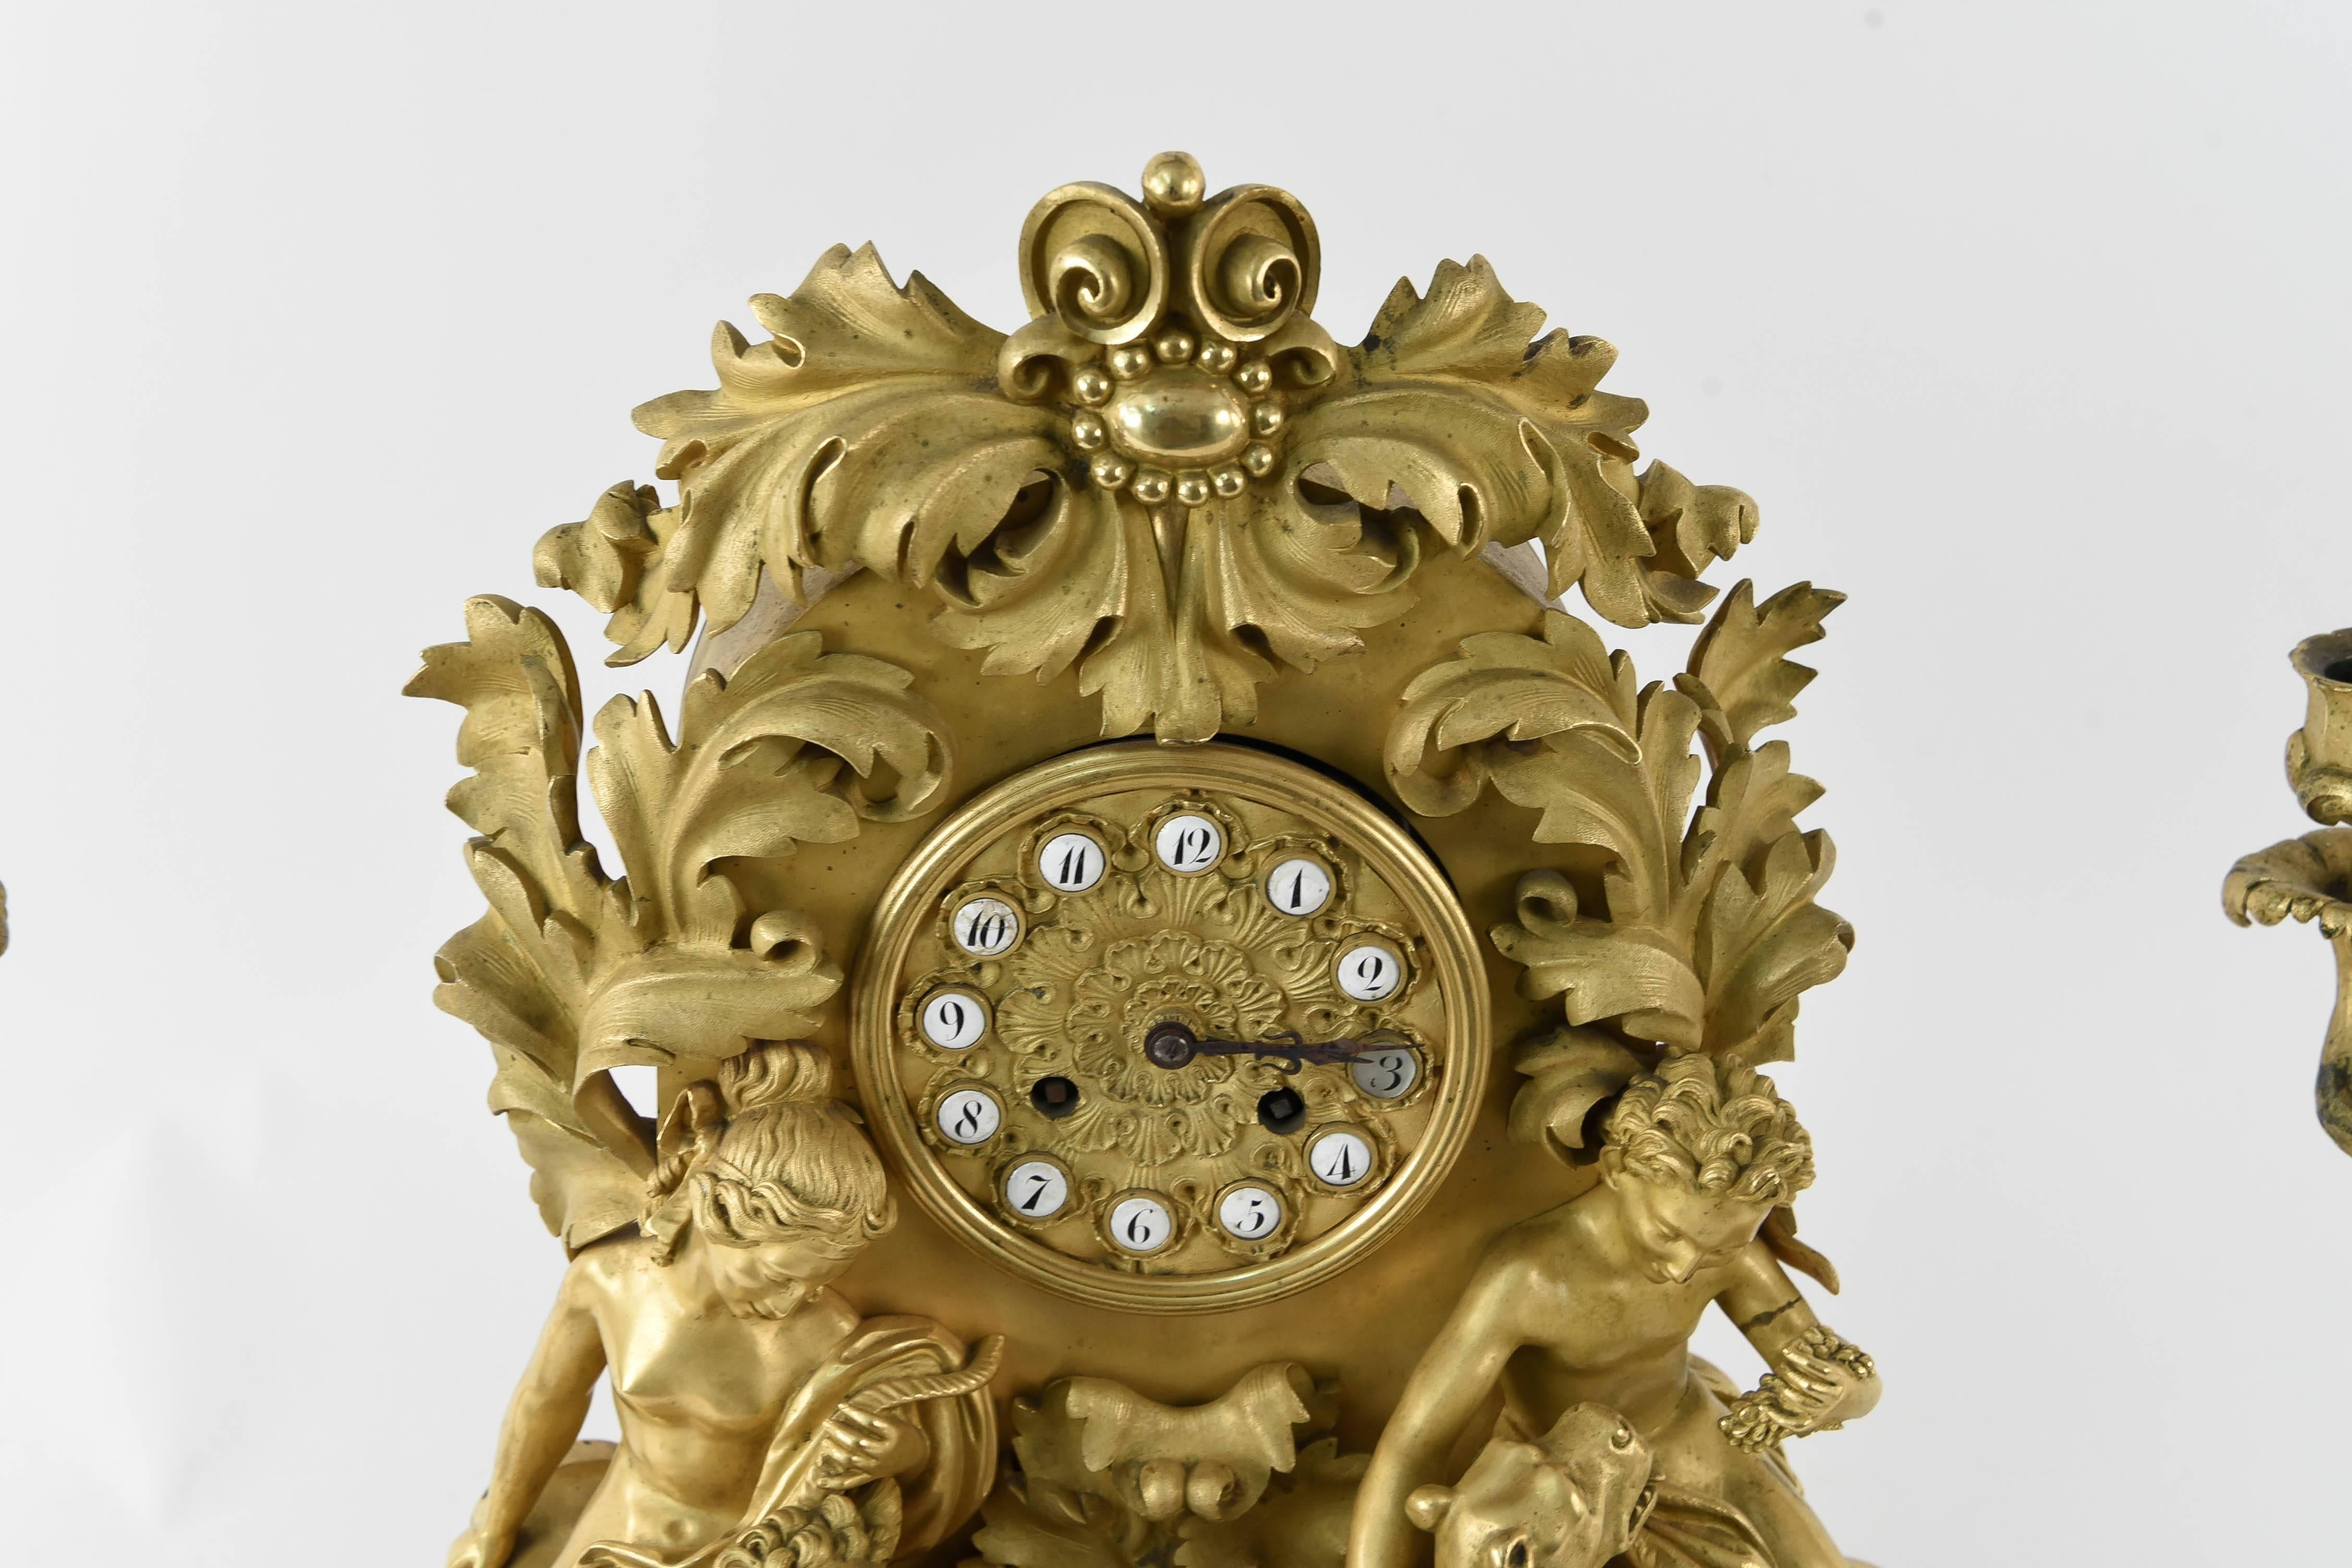 Ein erstaunliches Stück aus dem frühen 19. Jahrhundert. Dieses Uhrenset ist von bester Qualität, ein echtes Museumsstück, das die fachmännische Bronzearbeit der Franzosen an der Wende zum 19. Jahrhundert zeigt.